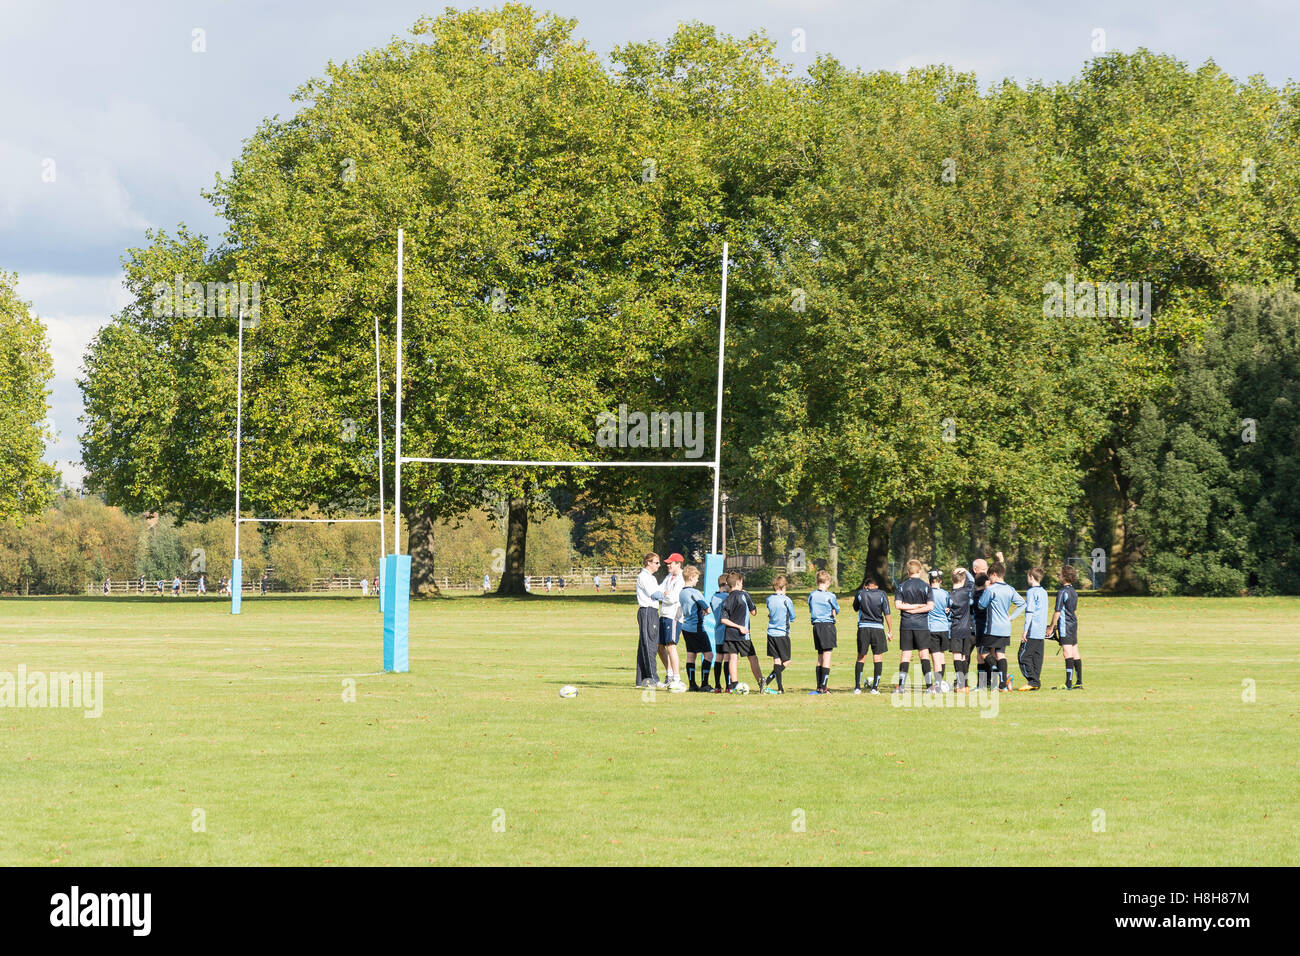 Les joueurs de rugby sur Eton College Les terrains de jeu, Eton Road, Eton, Berkshire, Angleterre, Royaume-Uni Banque D'Images